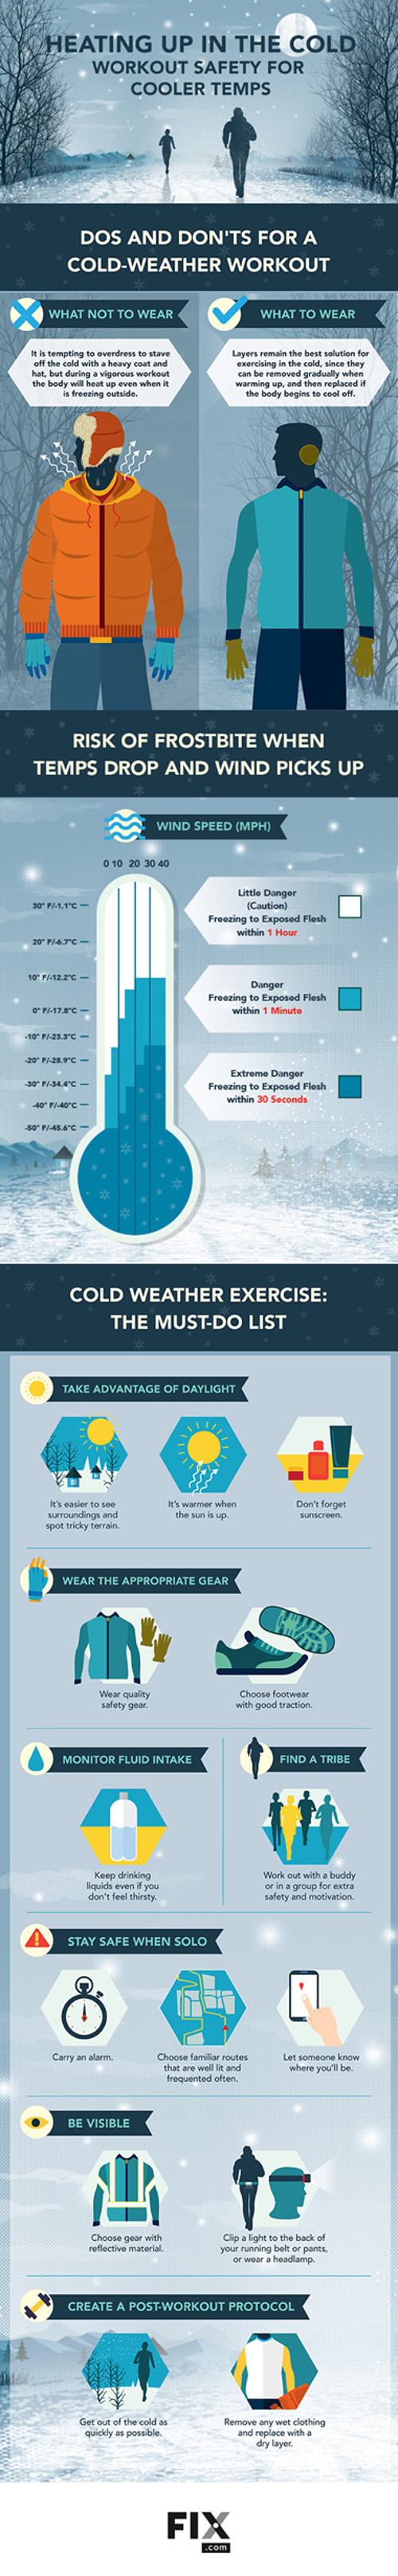 Cómo mantenerte activo en invierno infografia